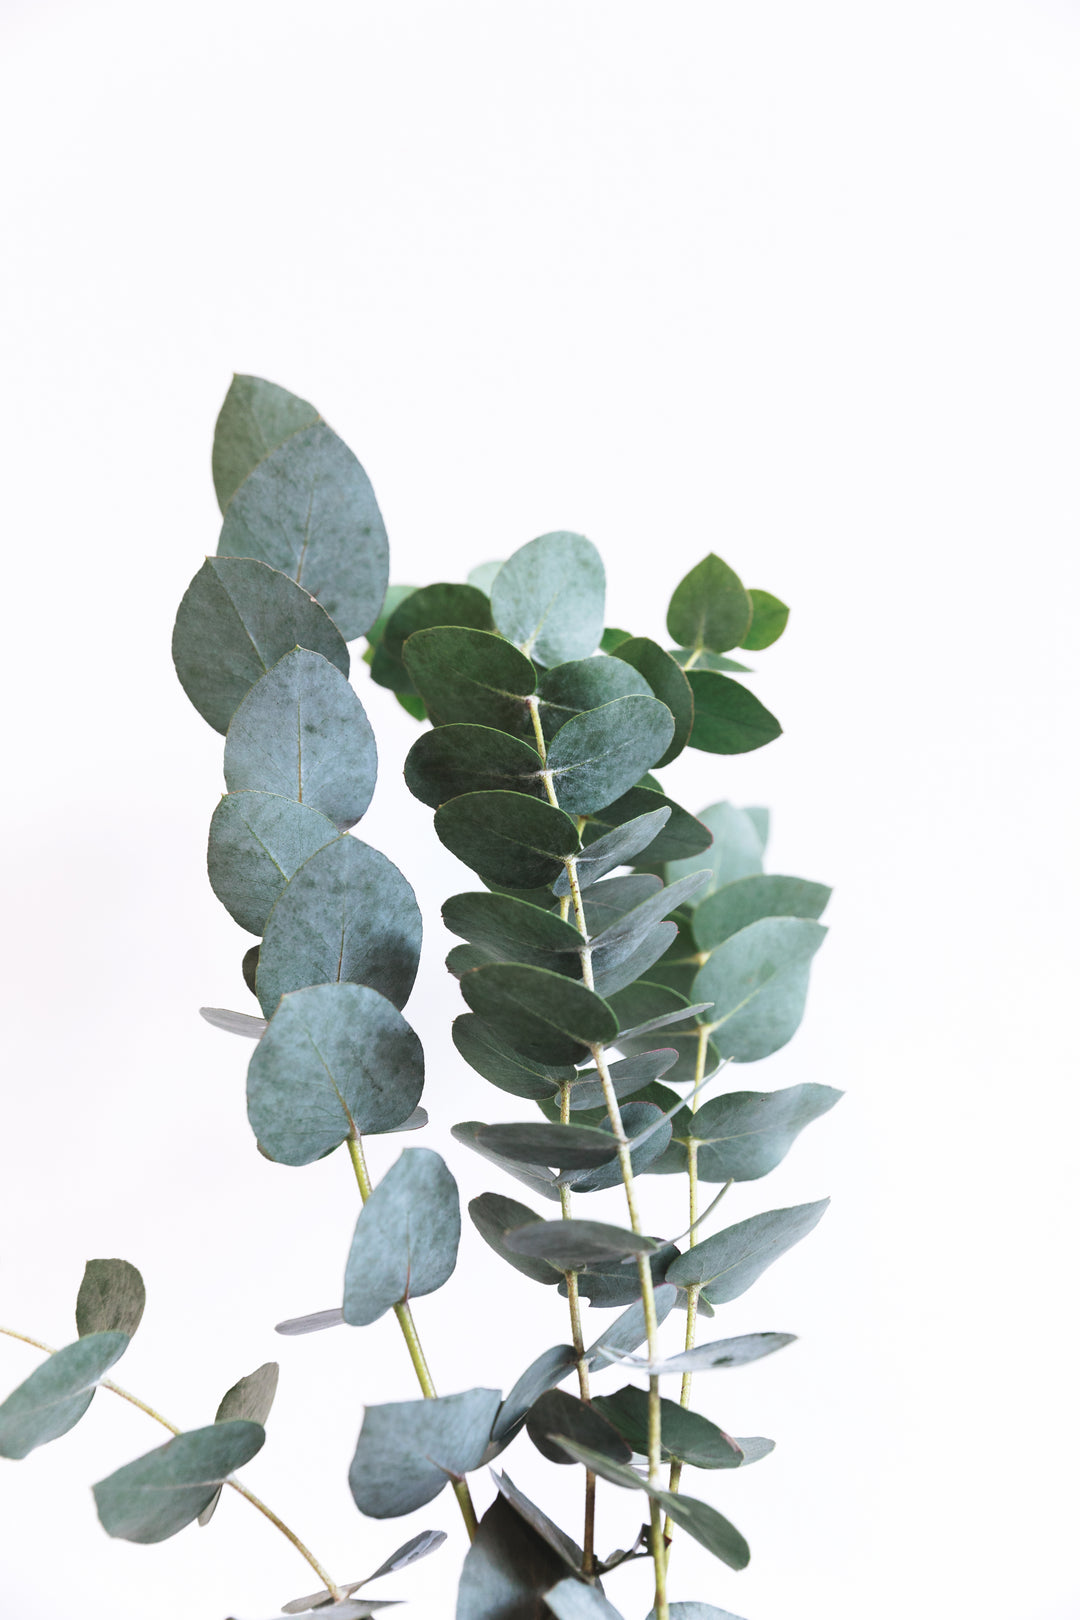 A eucalyptus branch